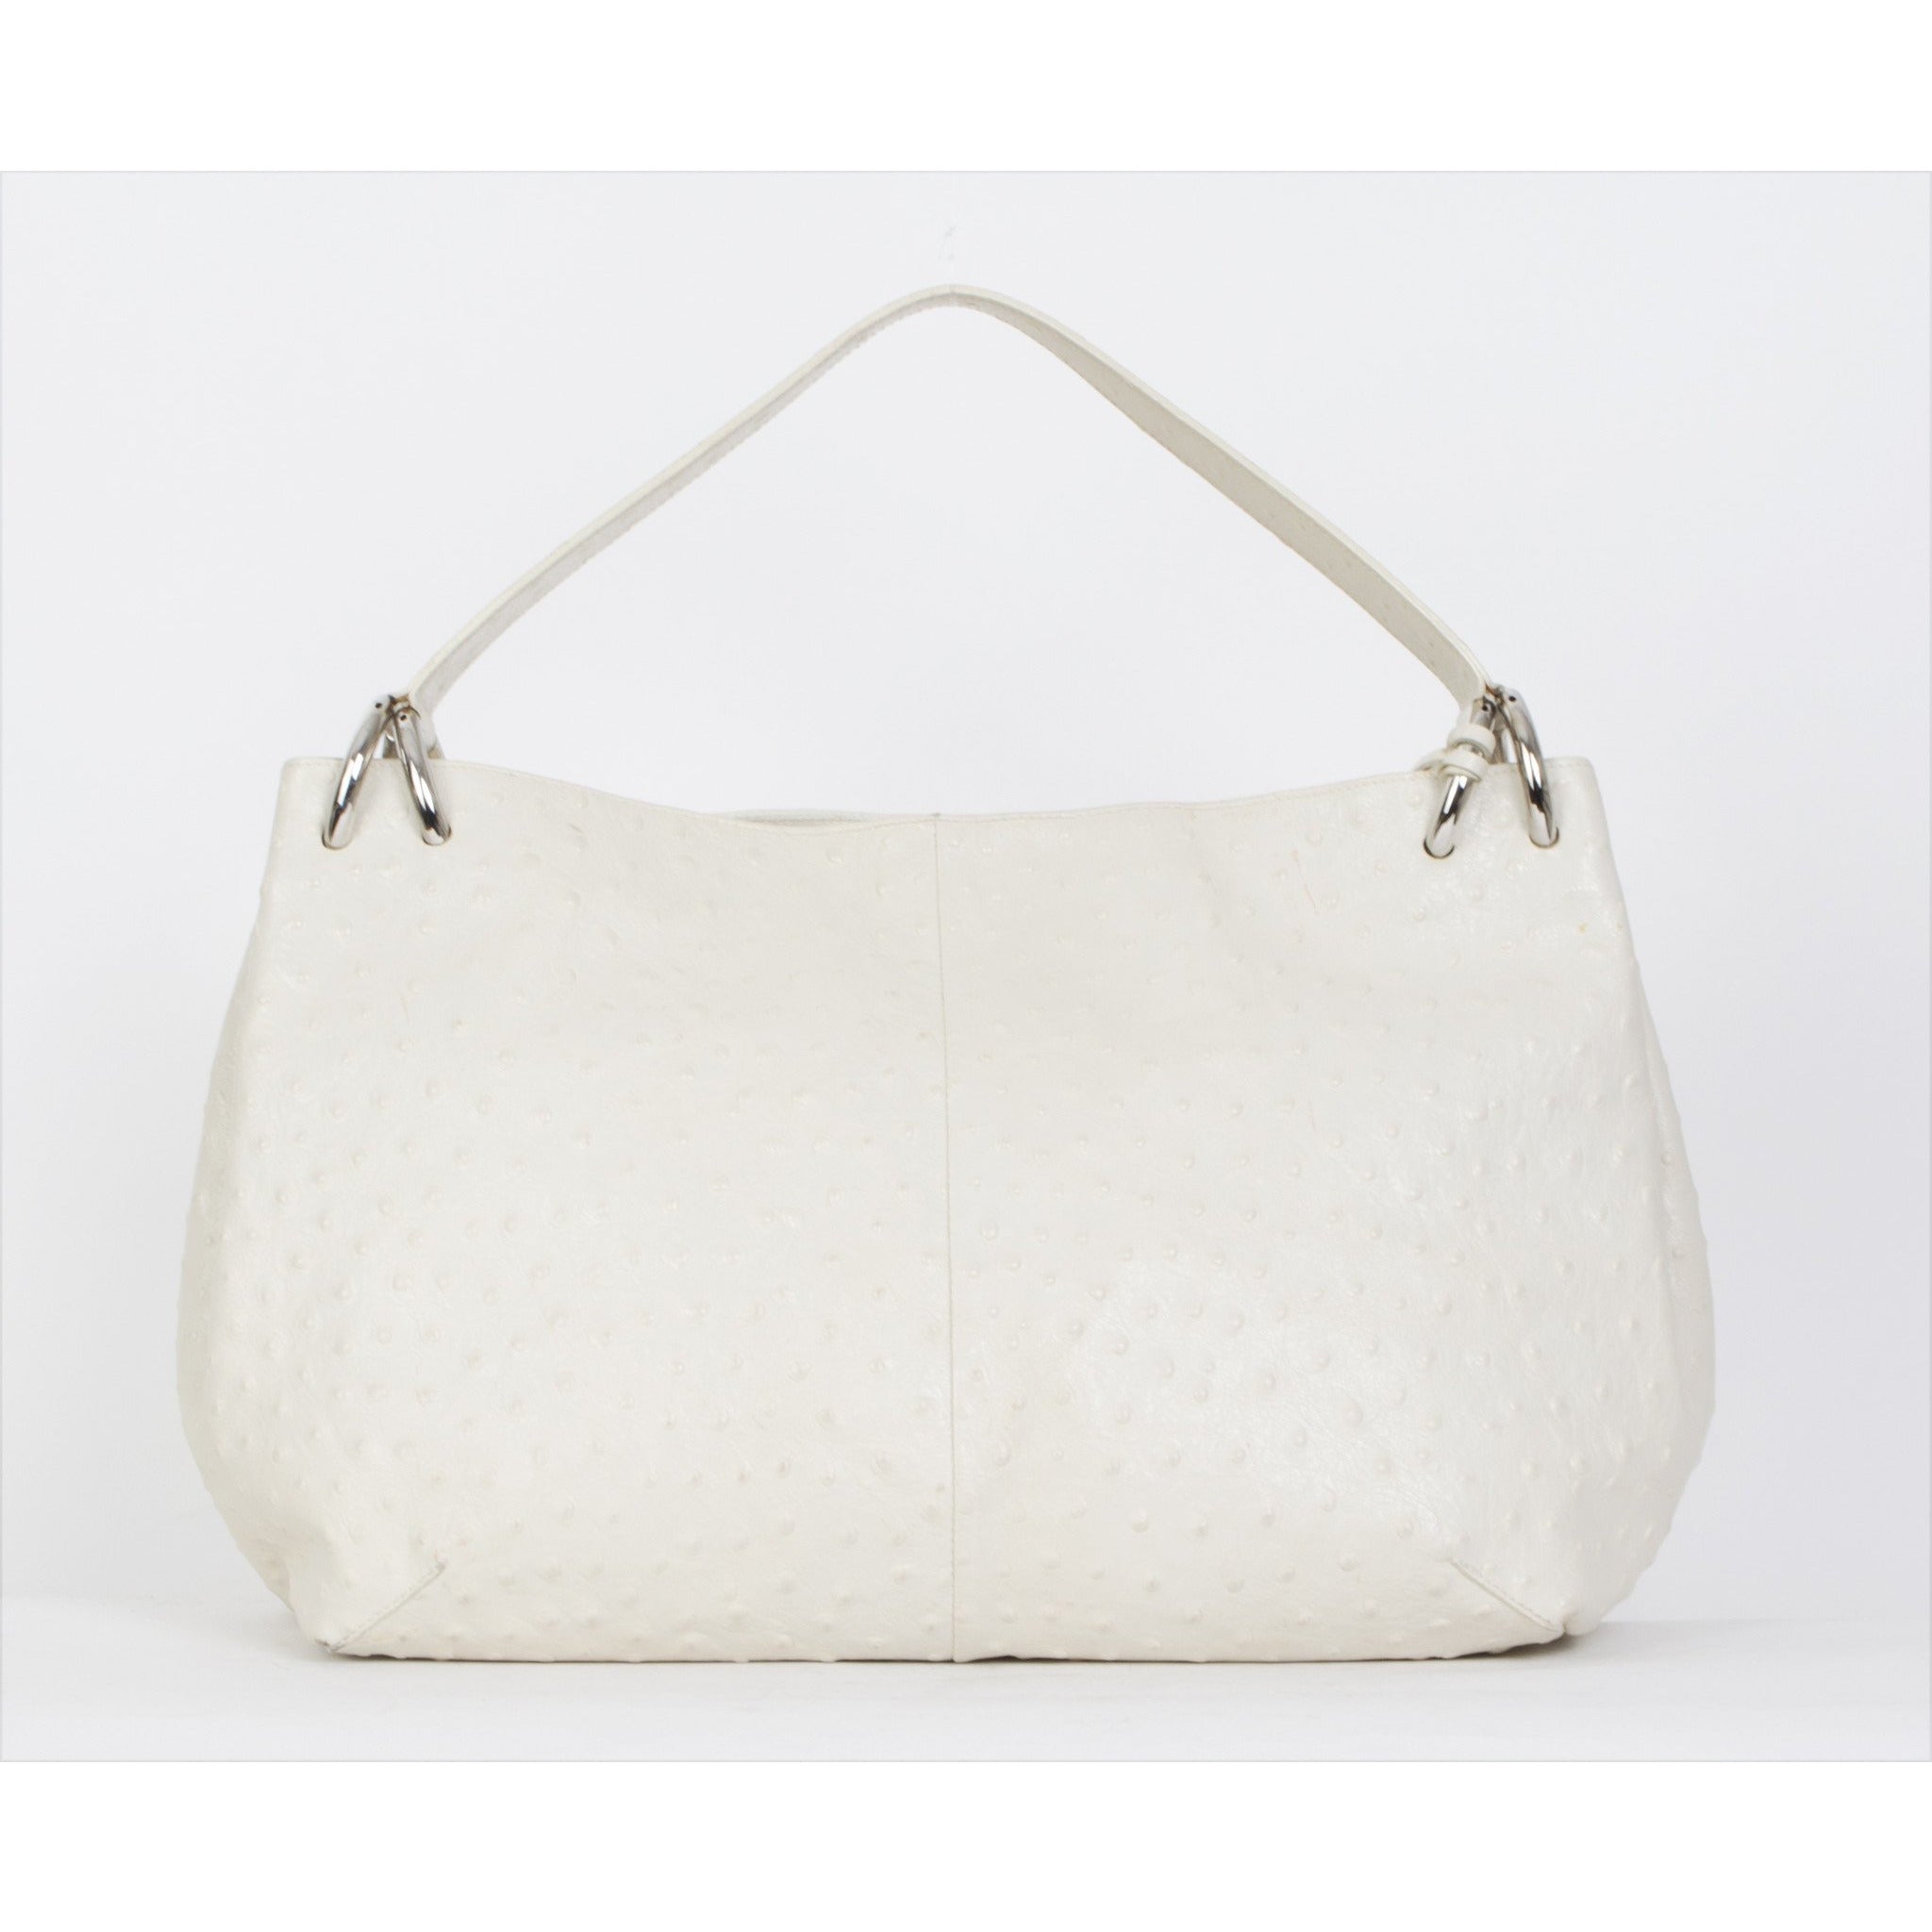 Furla Ostrich Leather Shoulder Bag